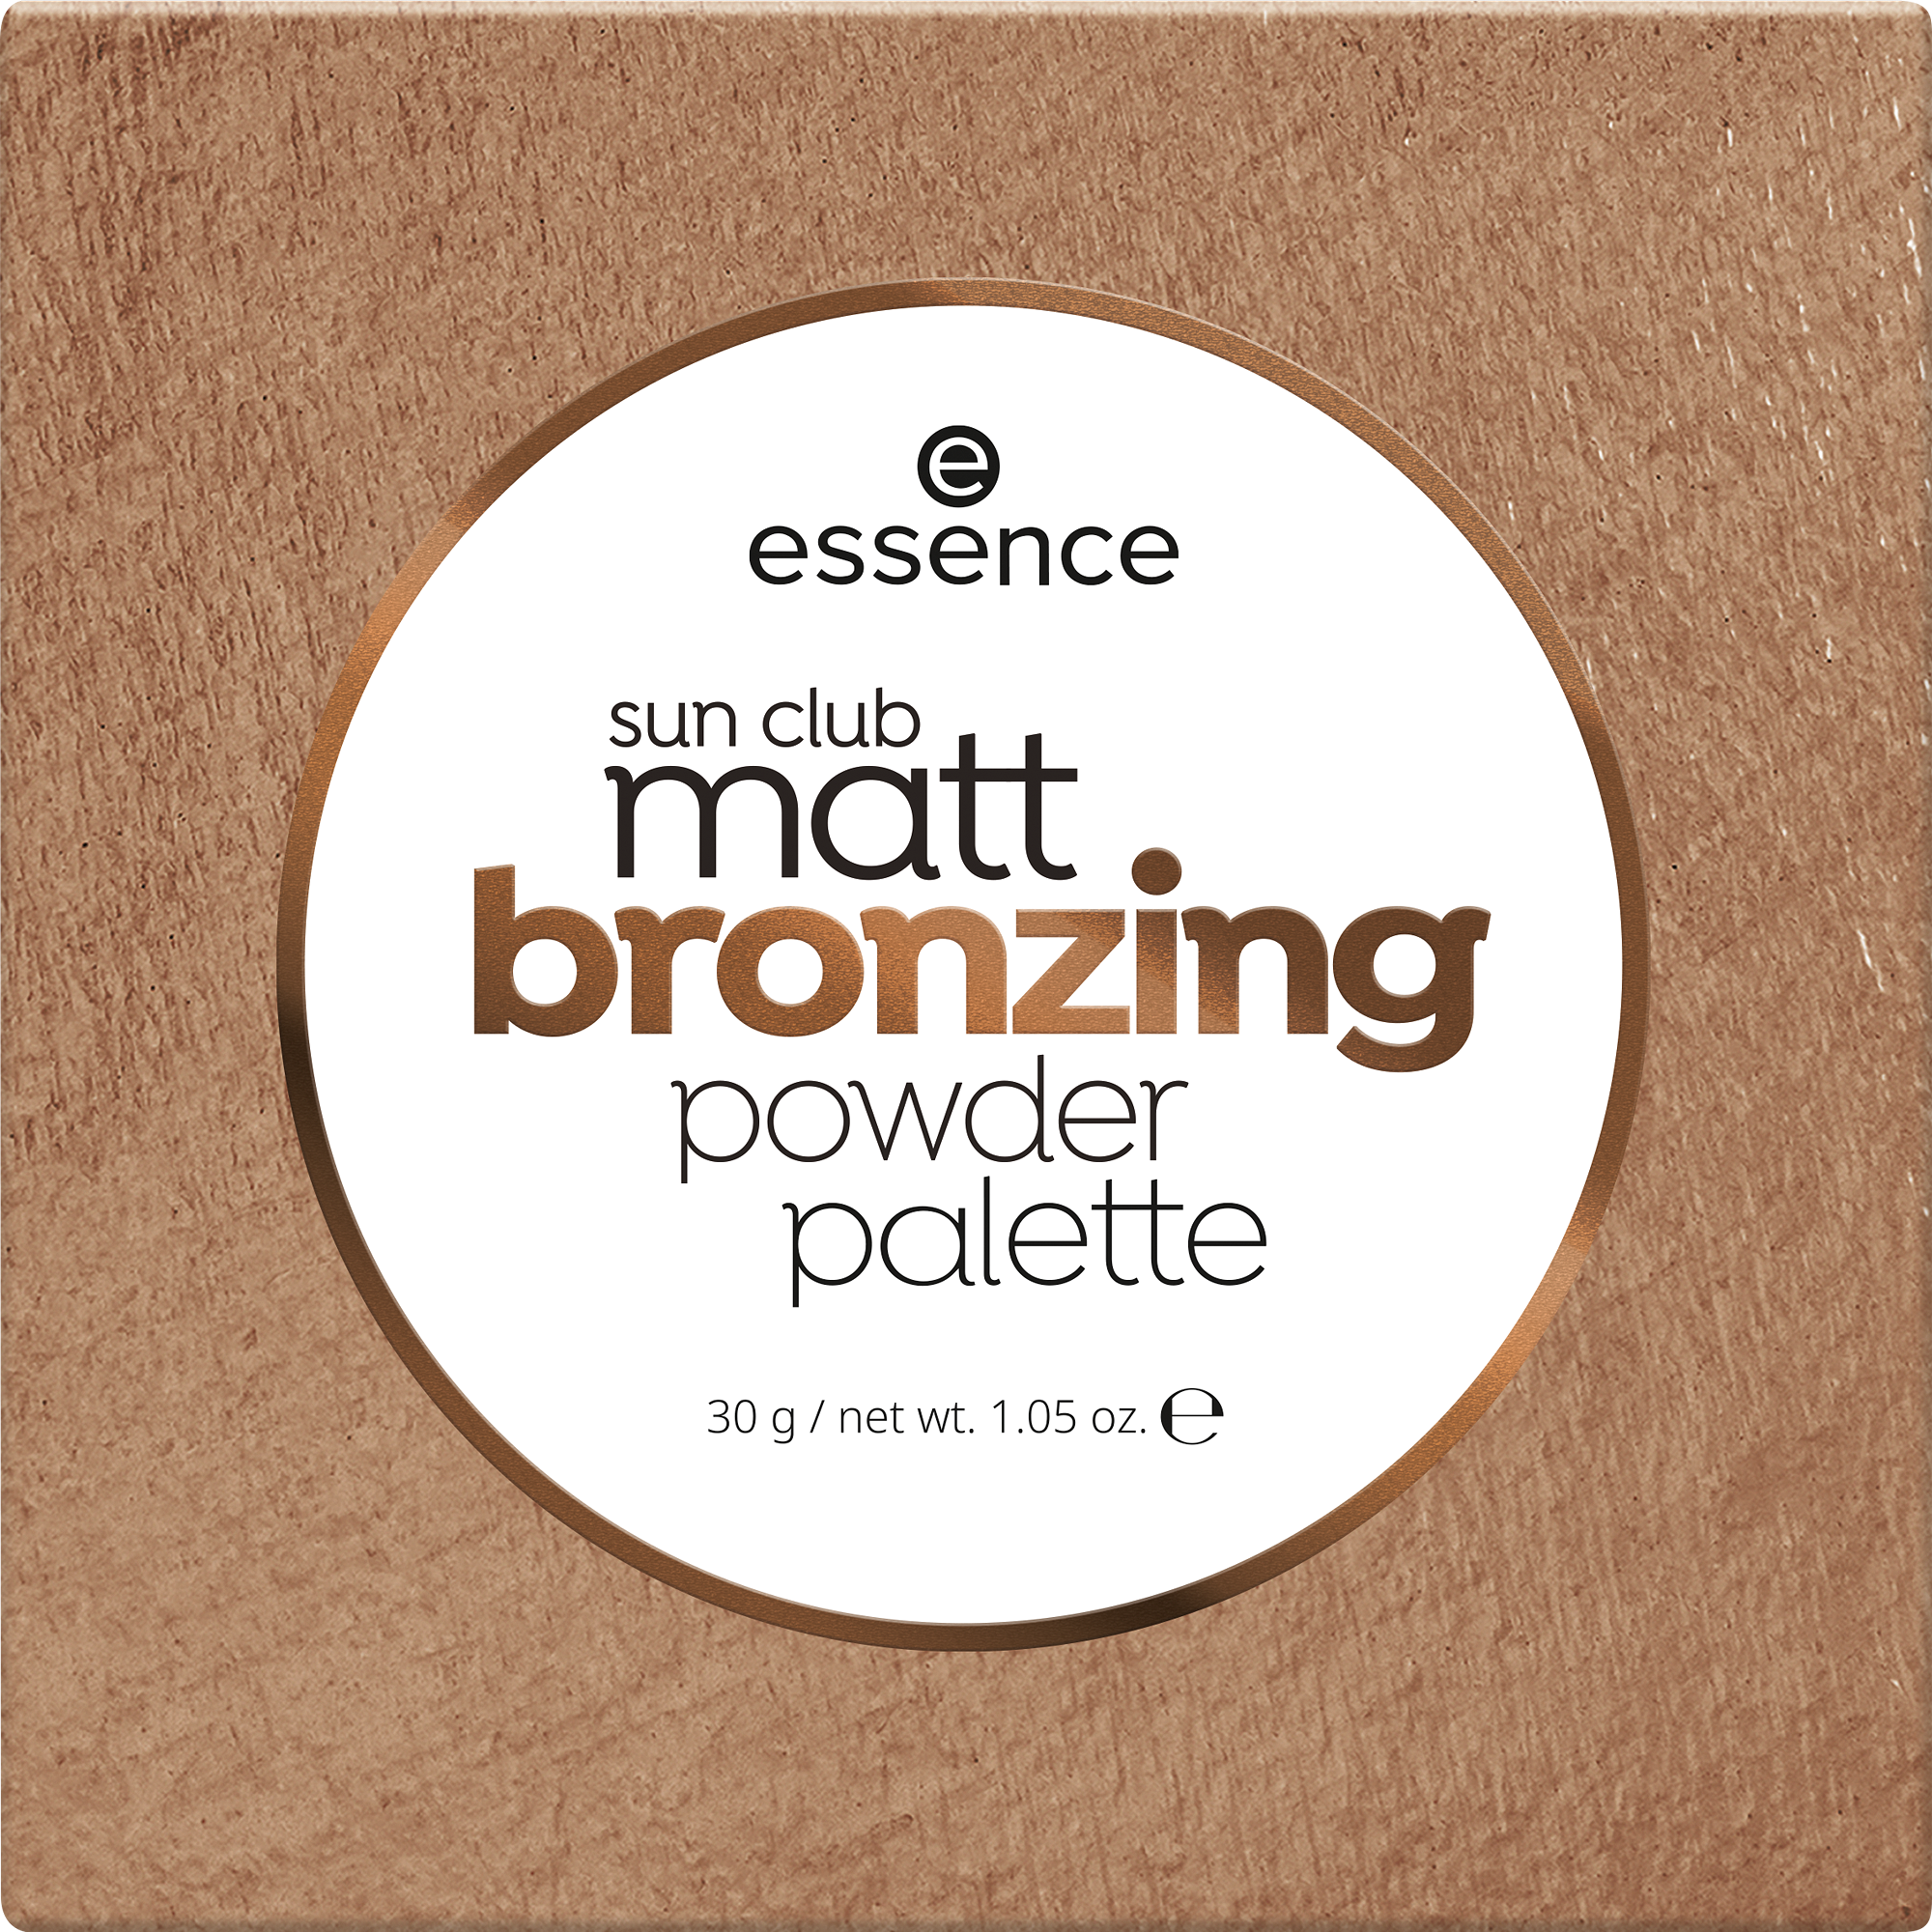 sun club matt bronzing powder palette